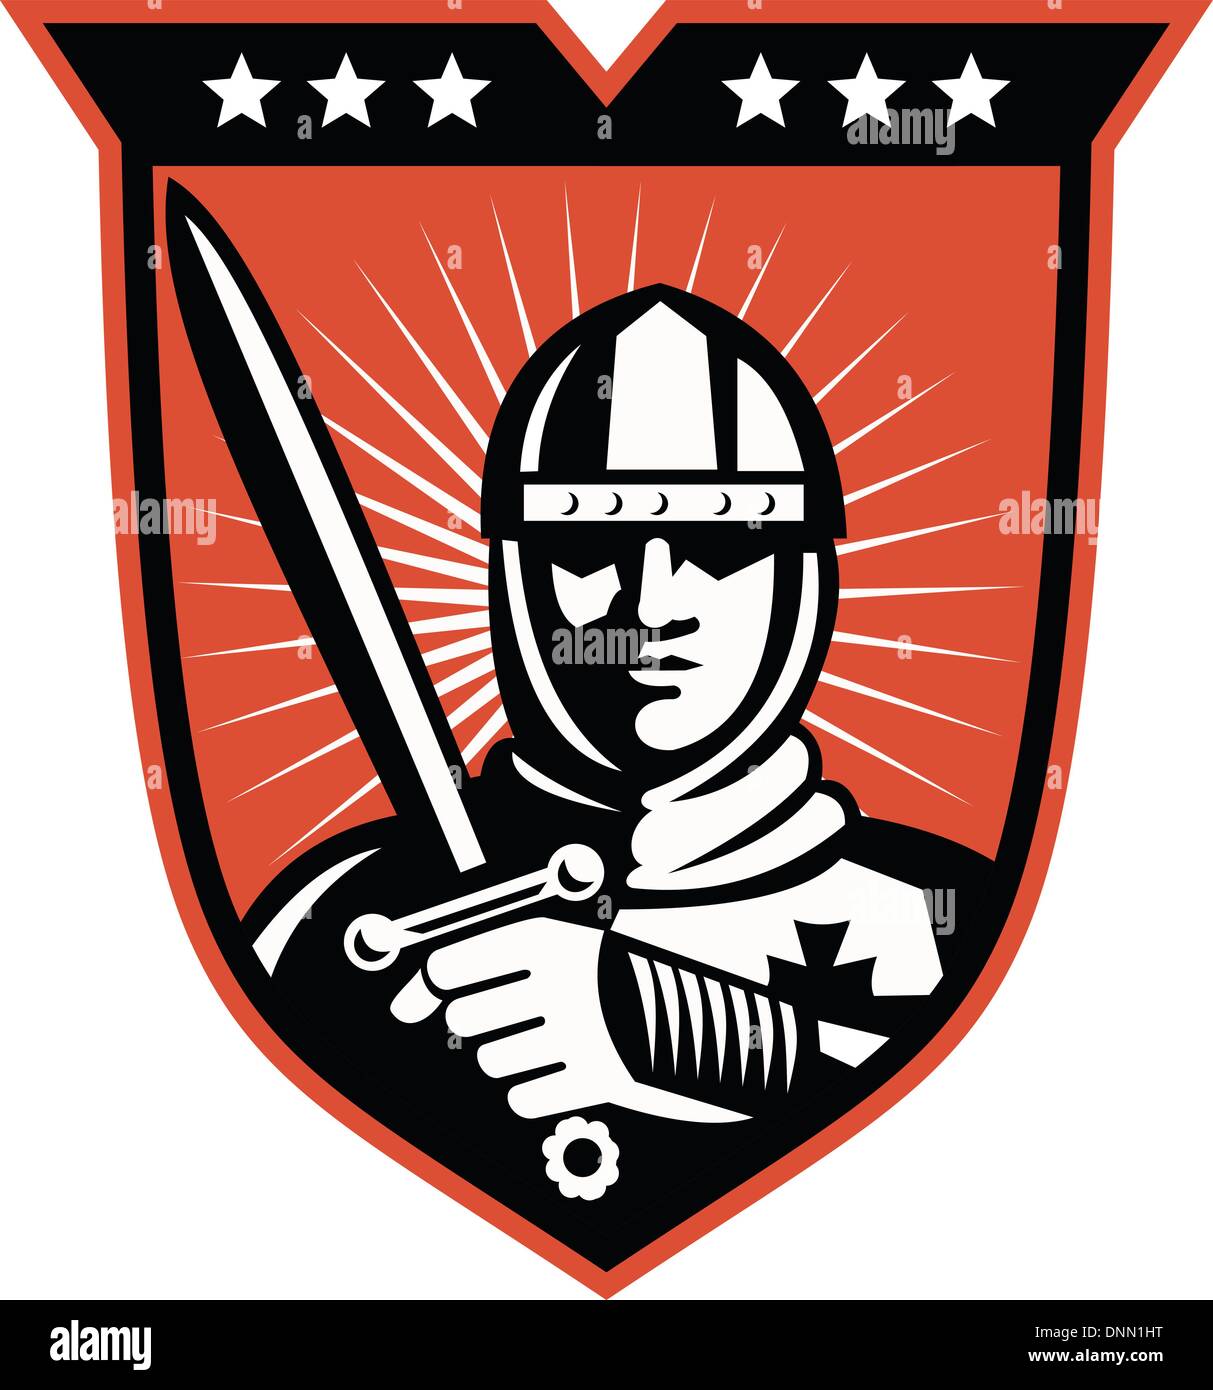 Darstellung der Ritter Krieger Kreuzritter mit Langschwert im Inneren Schild im retro-Stil gemacht. Stock Vektor